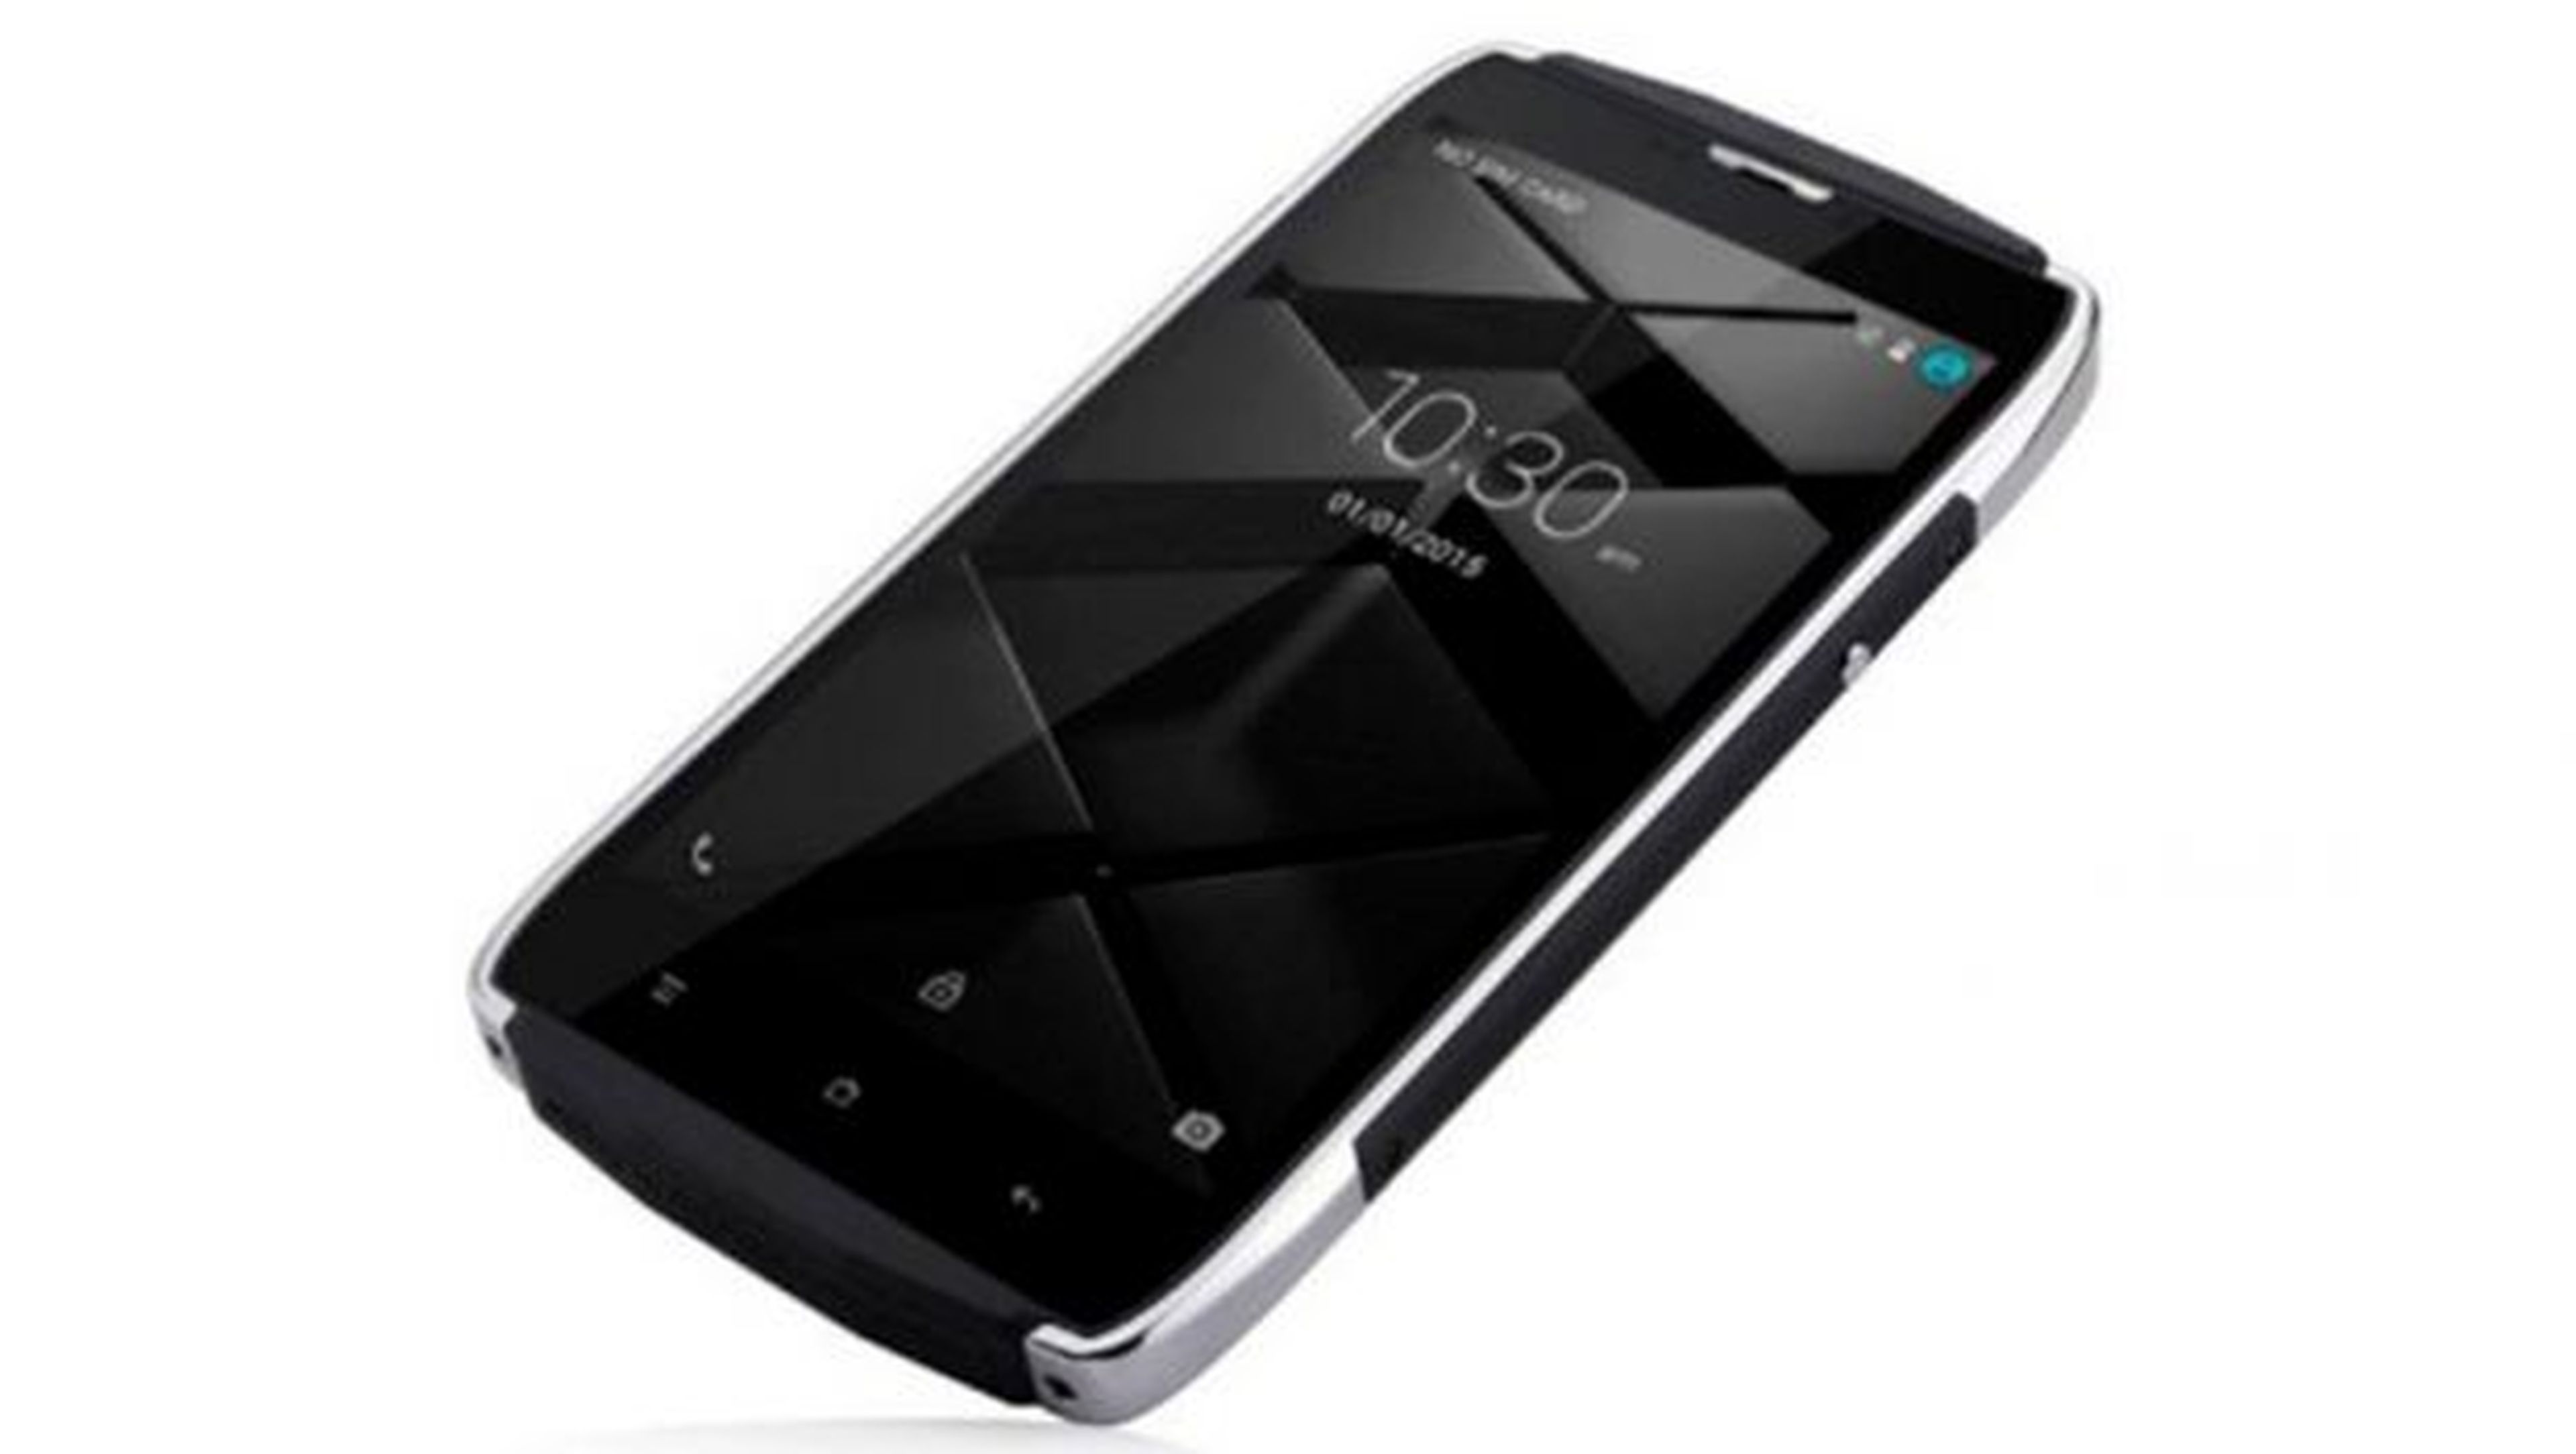 El UHANS U200 es un smartphone chino barato y resistente.